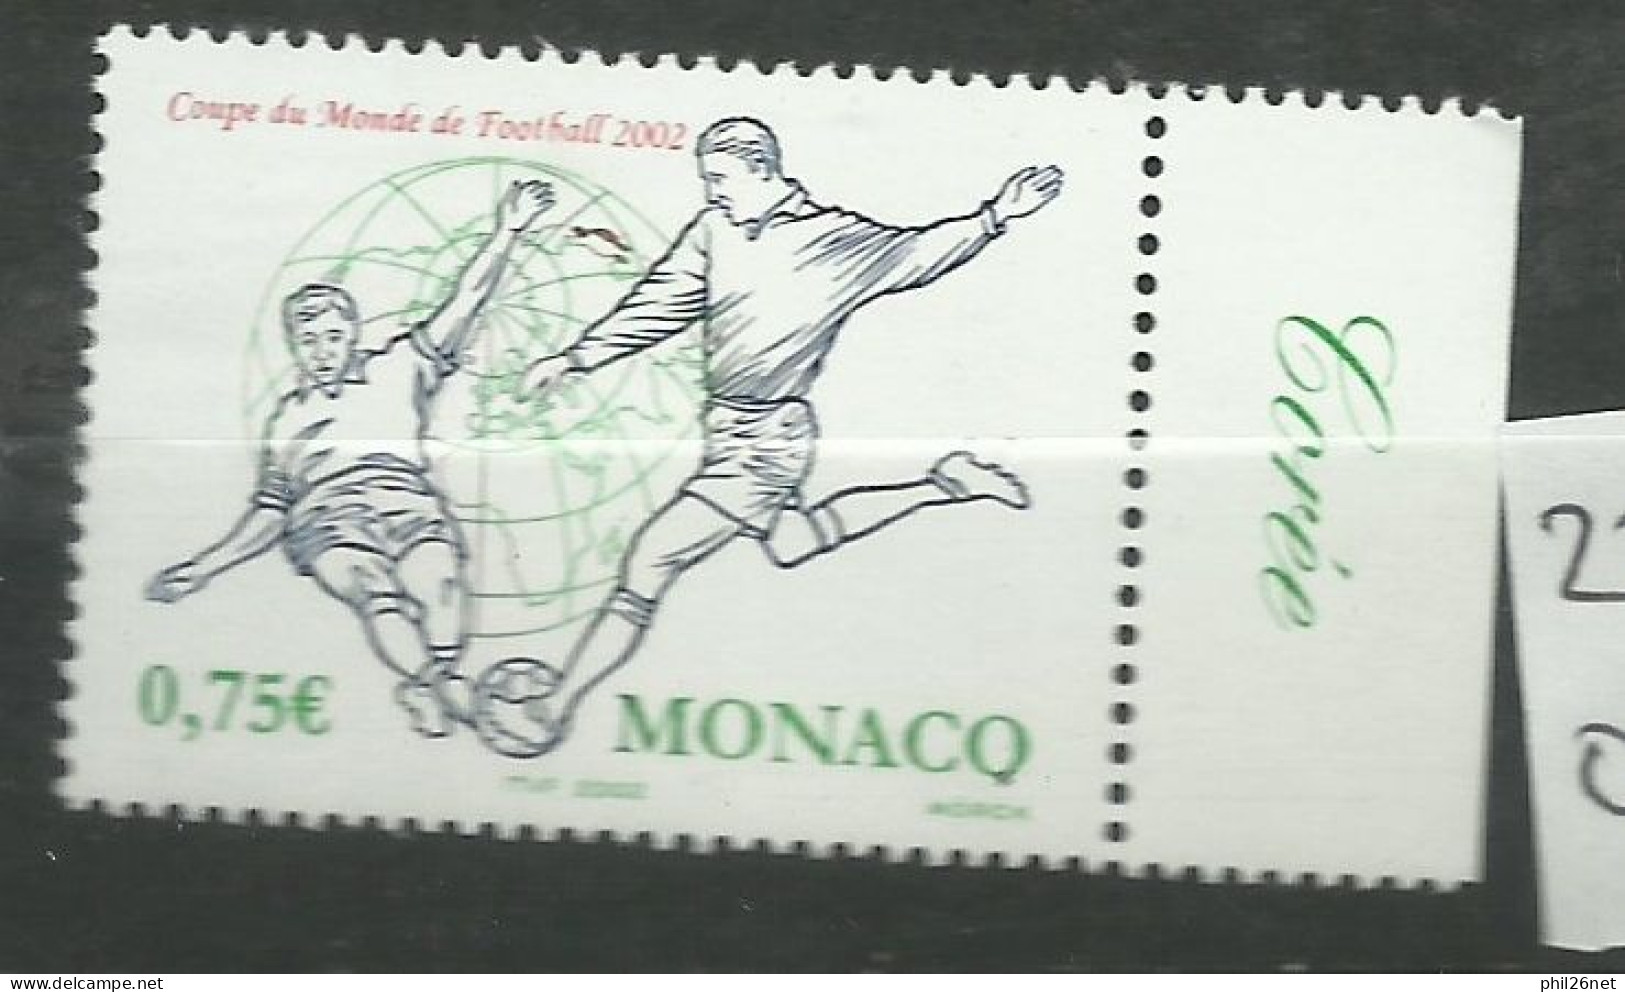 Monaco  N° 2350  Coupe Du Monde Football  2002 Corée Du Sud Et Japon   Neuf  *  *     B/TB   Voir Scans  Soldé ! ! ! - 2002 – Corea Del Sur / Japón